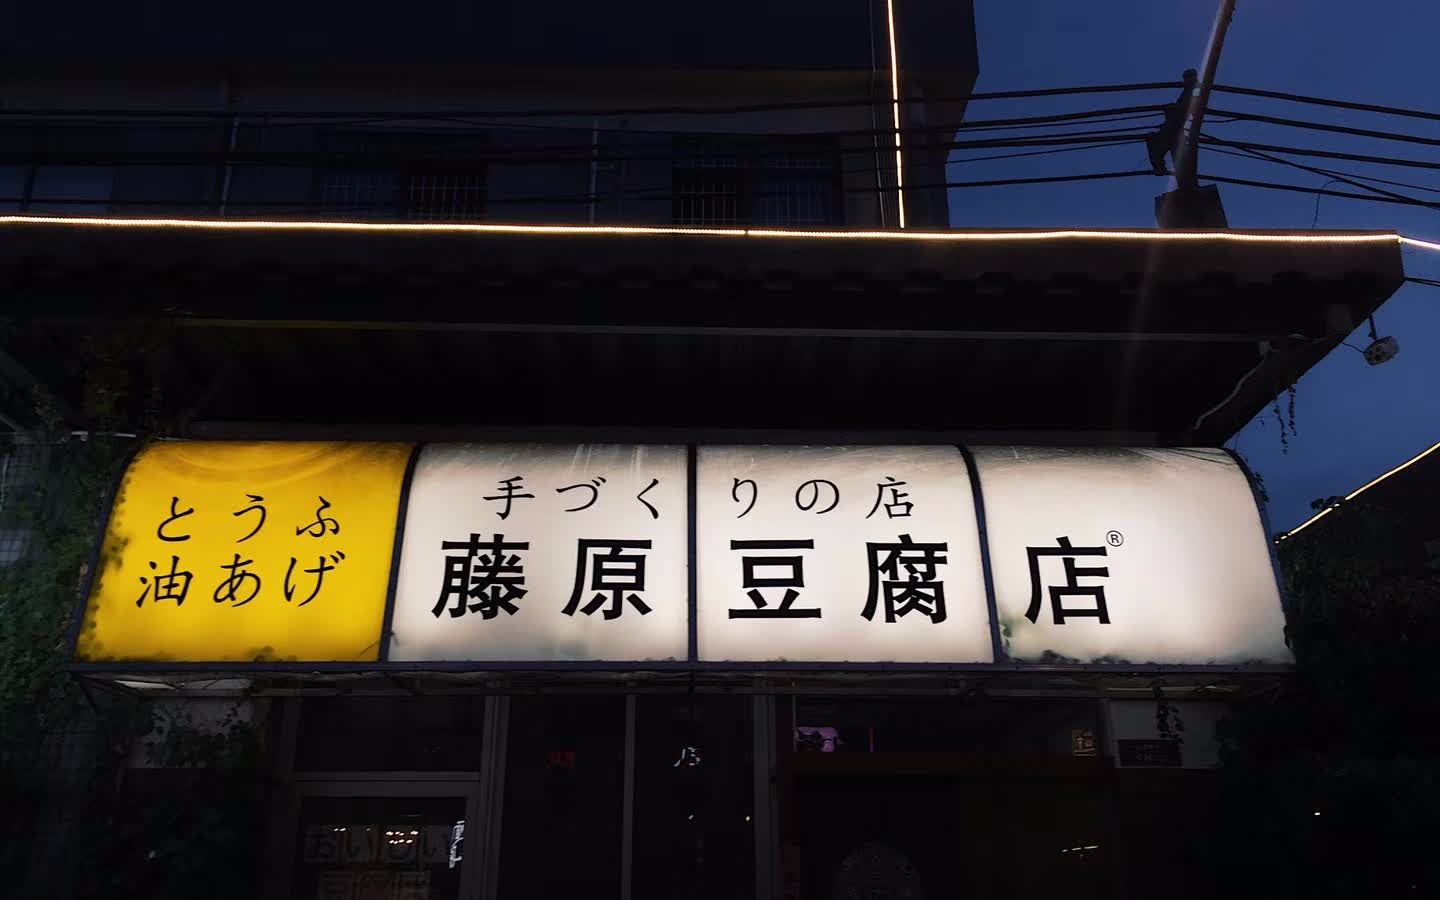 藤原豆腐店自家用壁纸图片